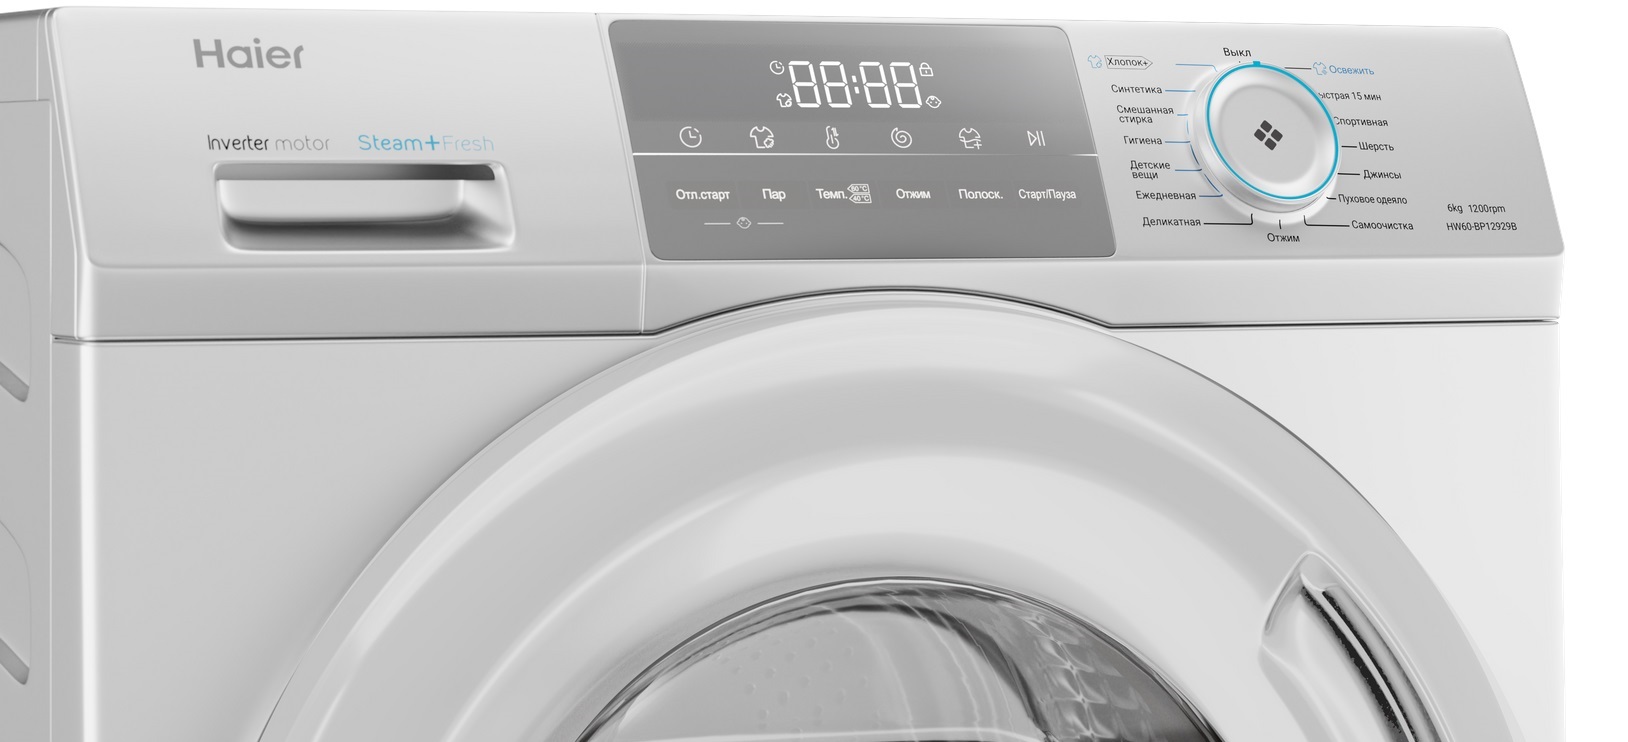 Her teknologiske vaskemaskiner